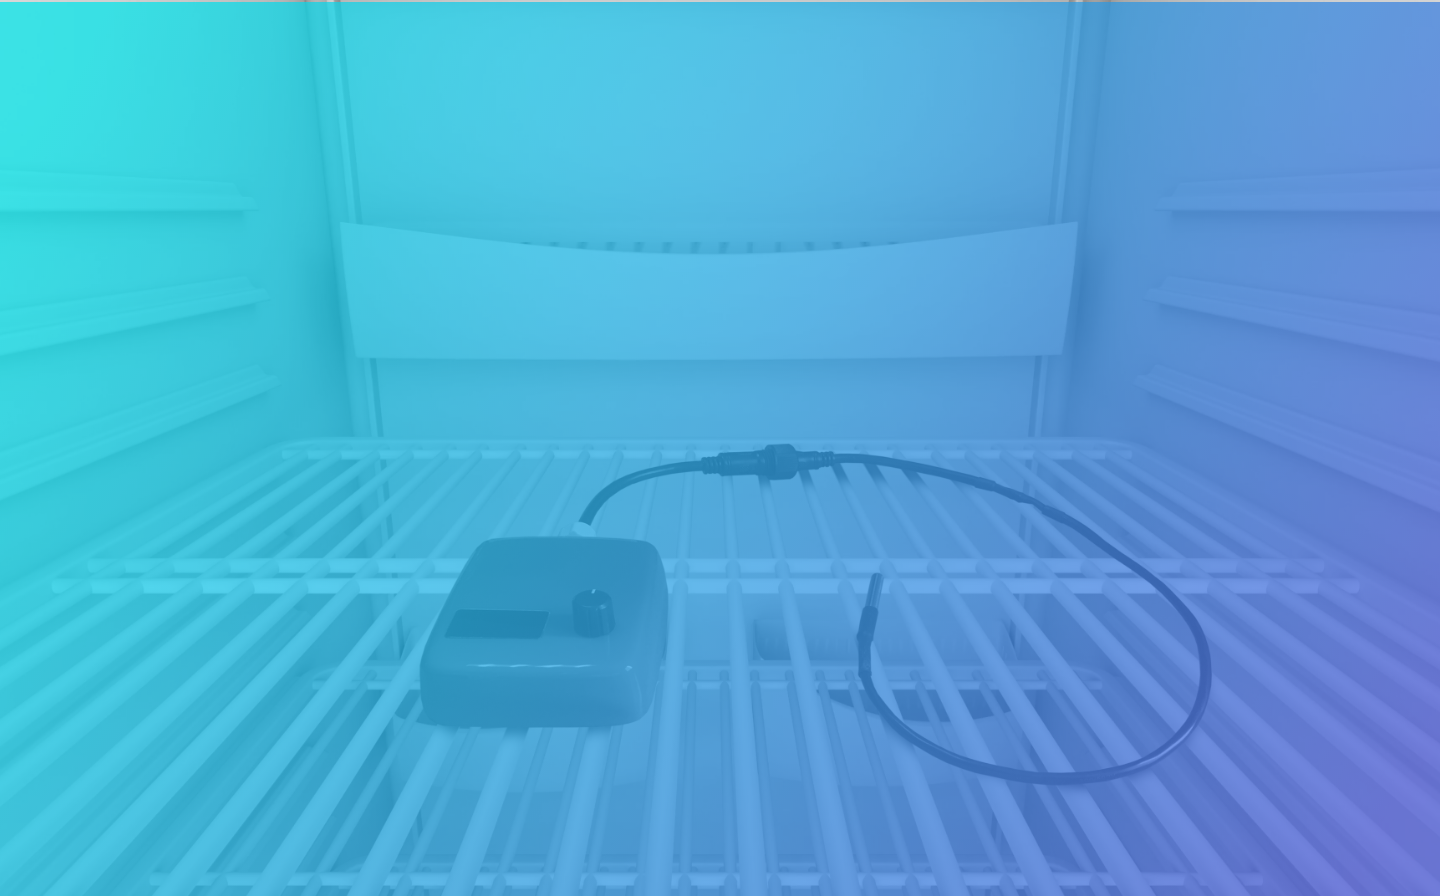 Imagen fondo con filtro azul dispositivo medidor de temperatura en nevera